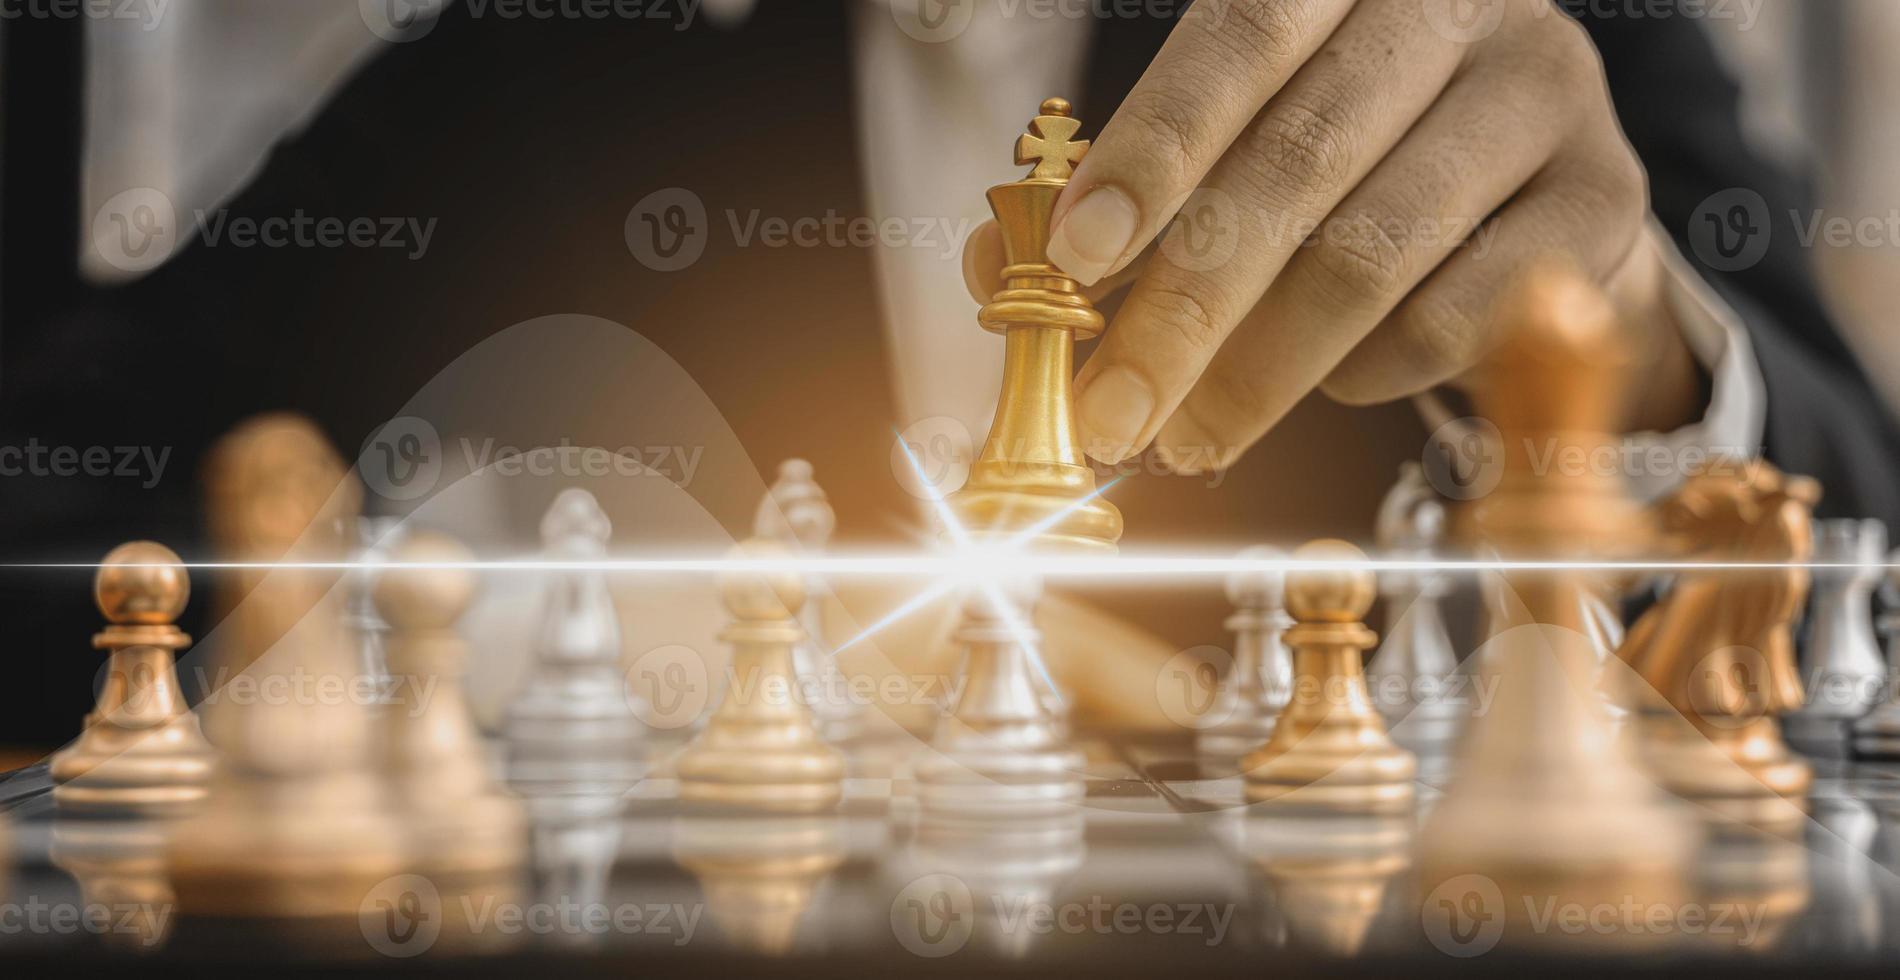 Pessoa segurando peças de xadrez dourado para executar um jogo, imagem  conceitual do empresário jogando xadrez em comparação com a gestão de um  negócio de risco, gráficos que mostram os fluxos financeiros.